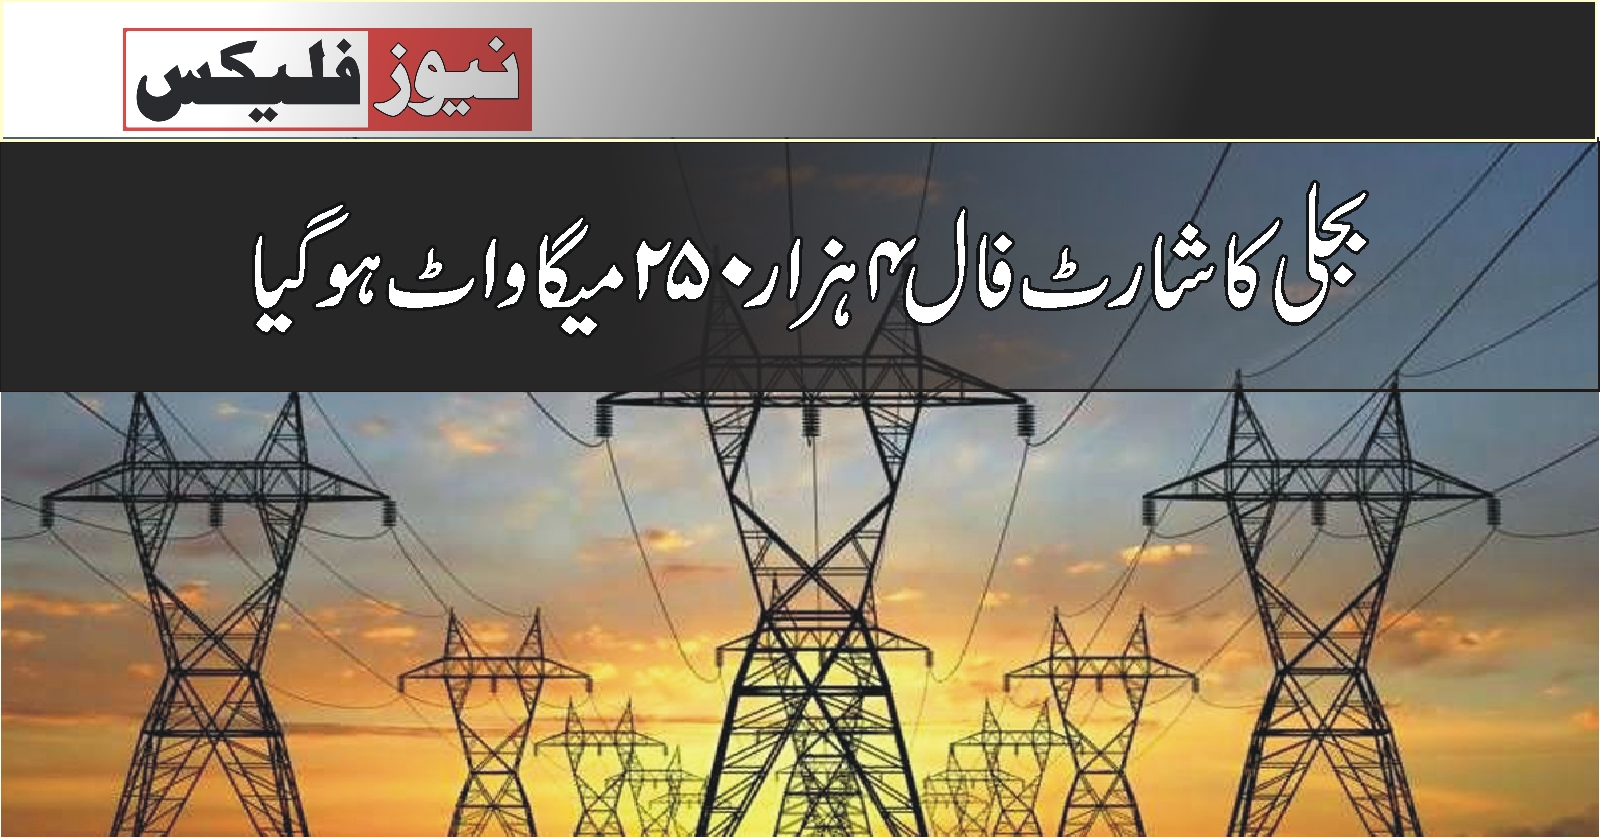 ملک میں بجلی کا شارٹ فال 4 ہزار250 میگاواٹ ہوگیا